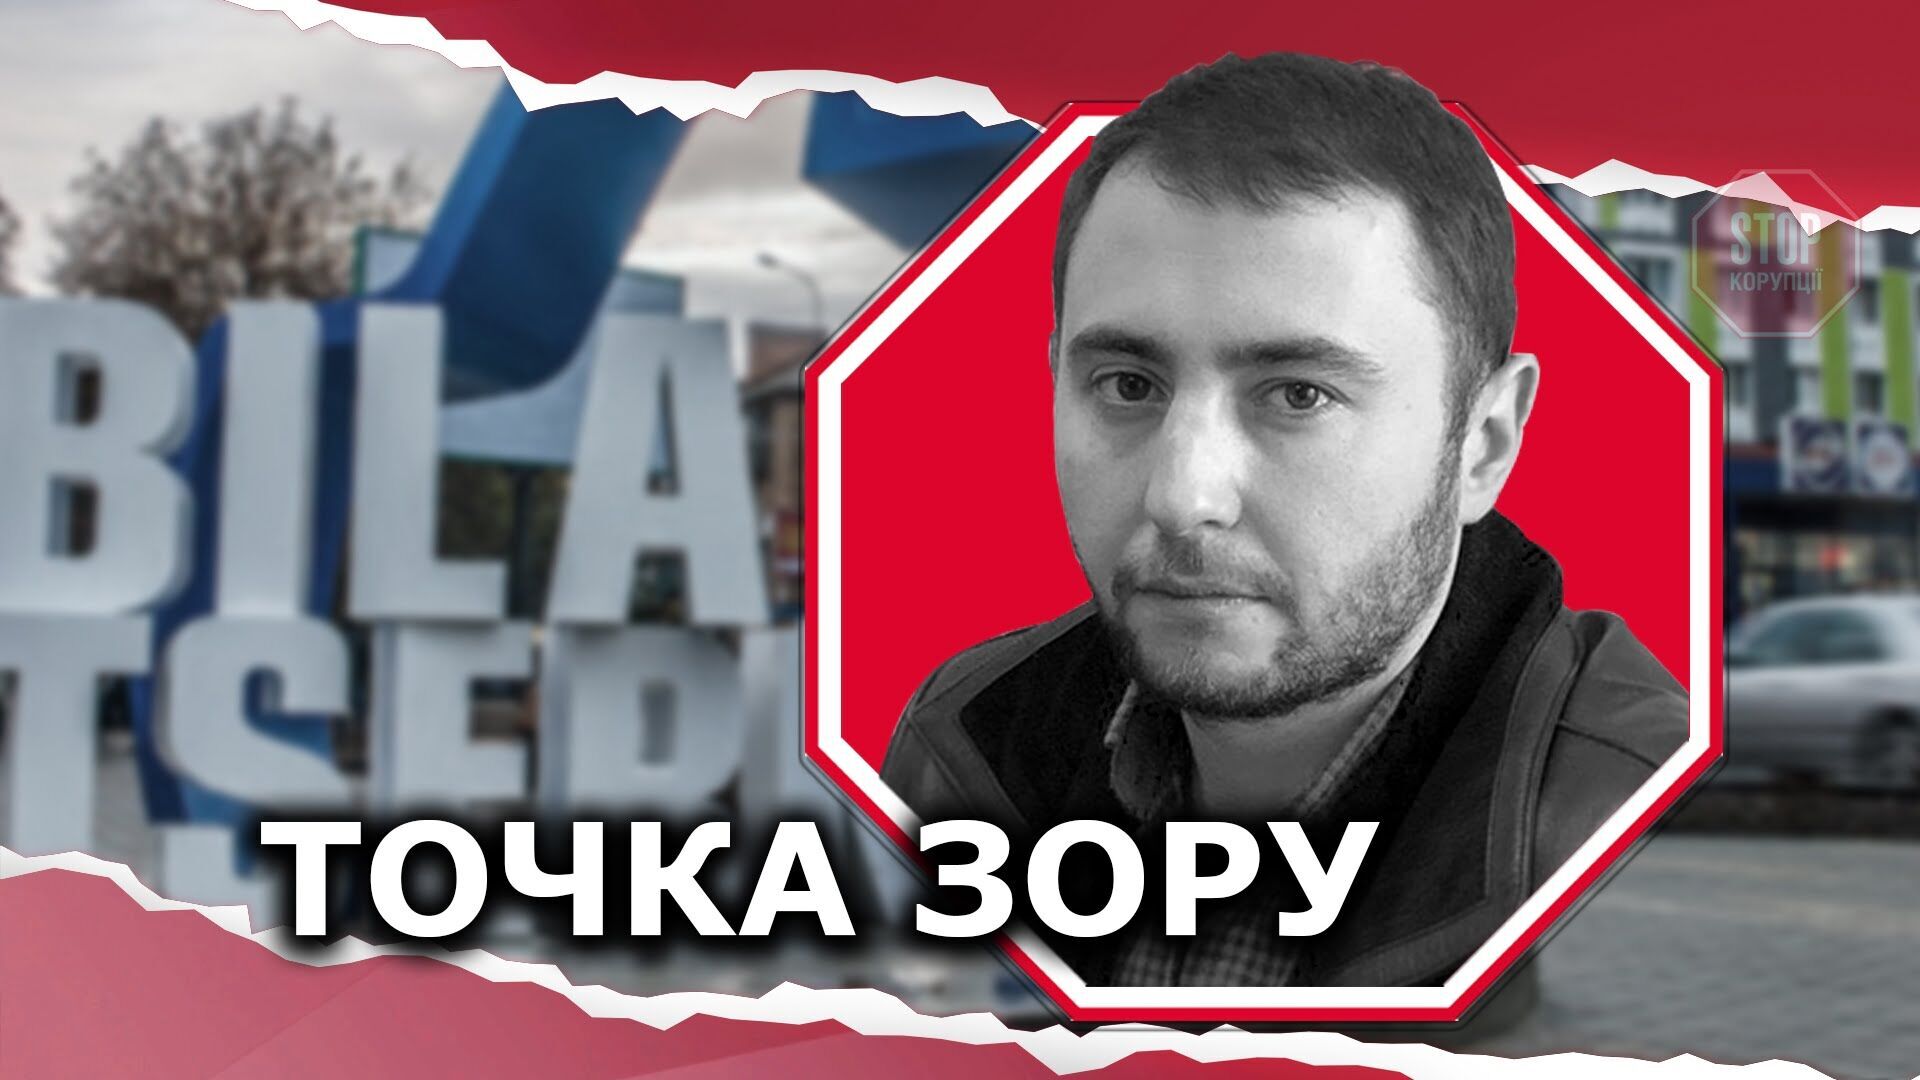  З квітня 2020 року Микола Верещак приєднався до організації Ілюстрація: СтопКор